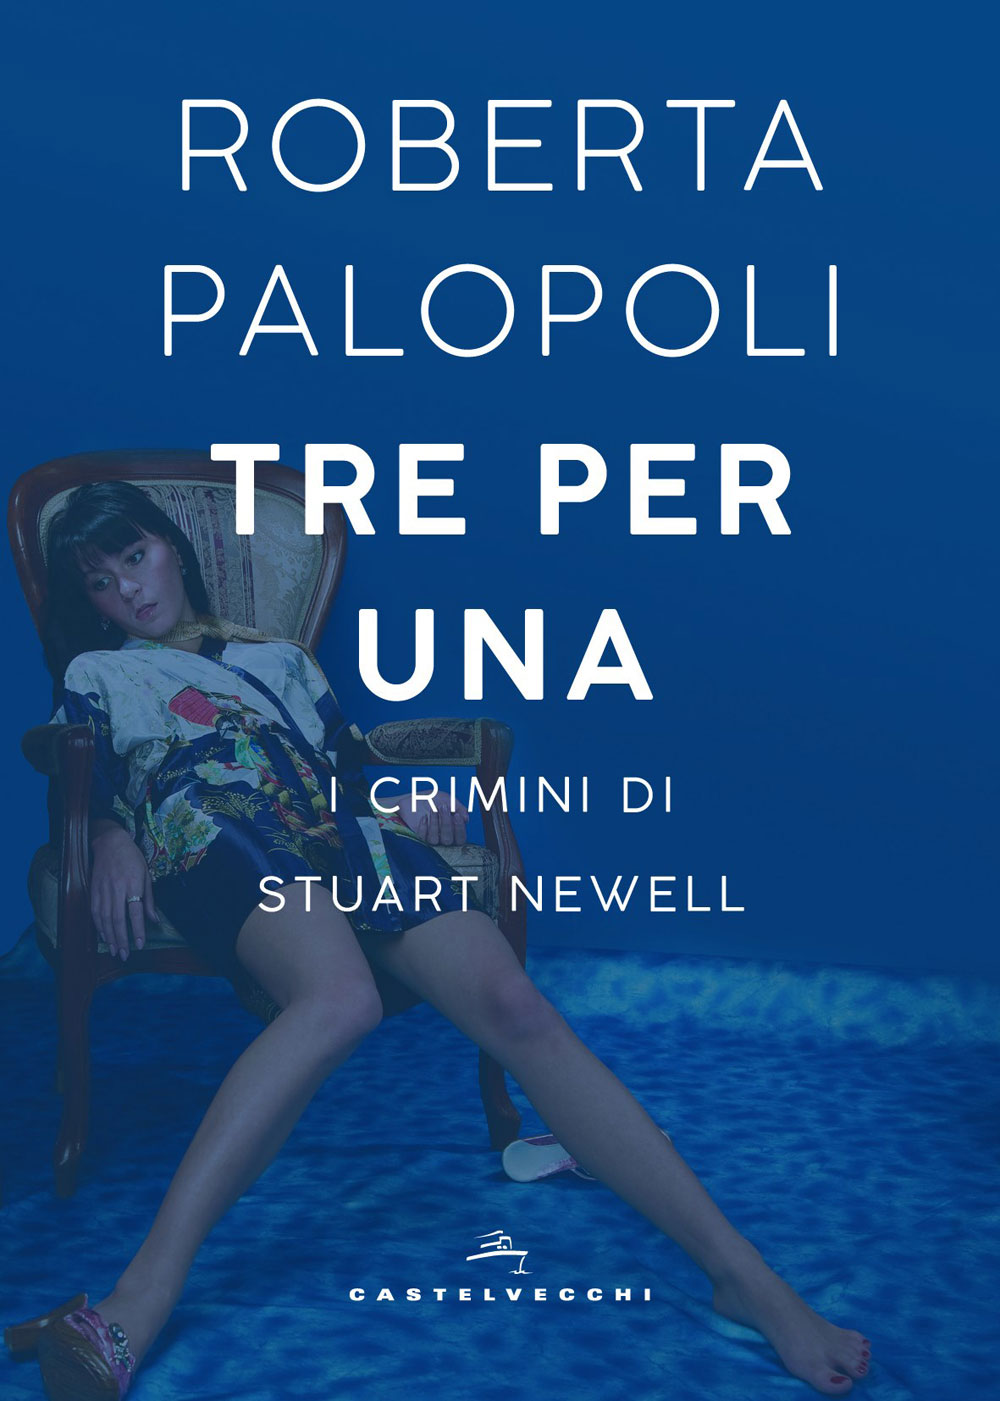 Libri&Editoria. Roberta Palopoli presenta il suo nuovo Romanzo:” Tre per una. I crimini di Stuart Newell”